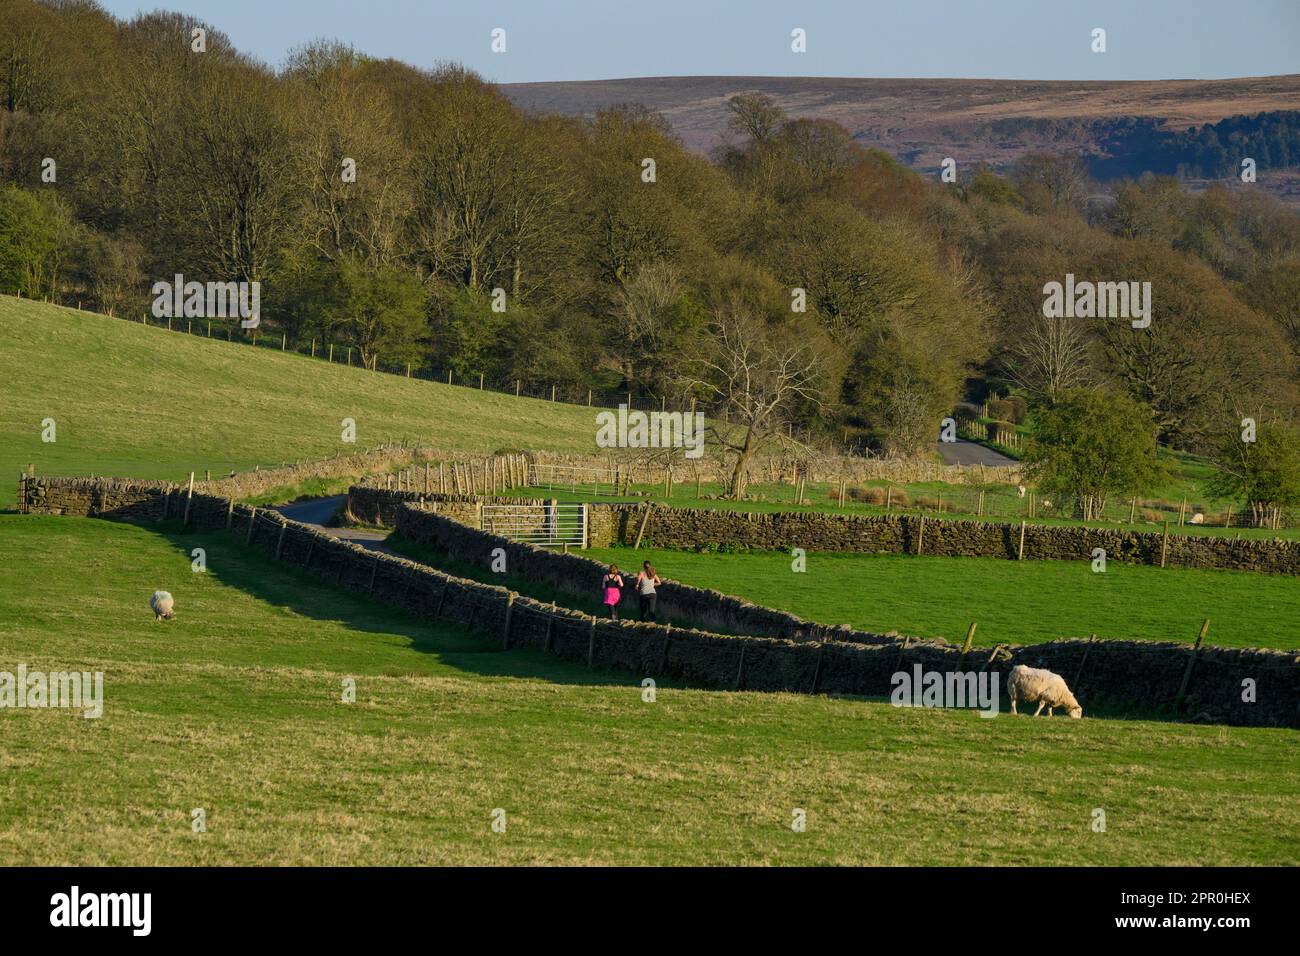 Femmes (joggeurs féminins) sur une route de campagne entourée de murs en pierre sèche et de moutons parés, pittoresque et ensoleillée - Addingham, West Yorkshire, Angleterre Banque D'Images